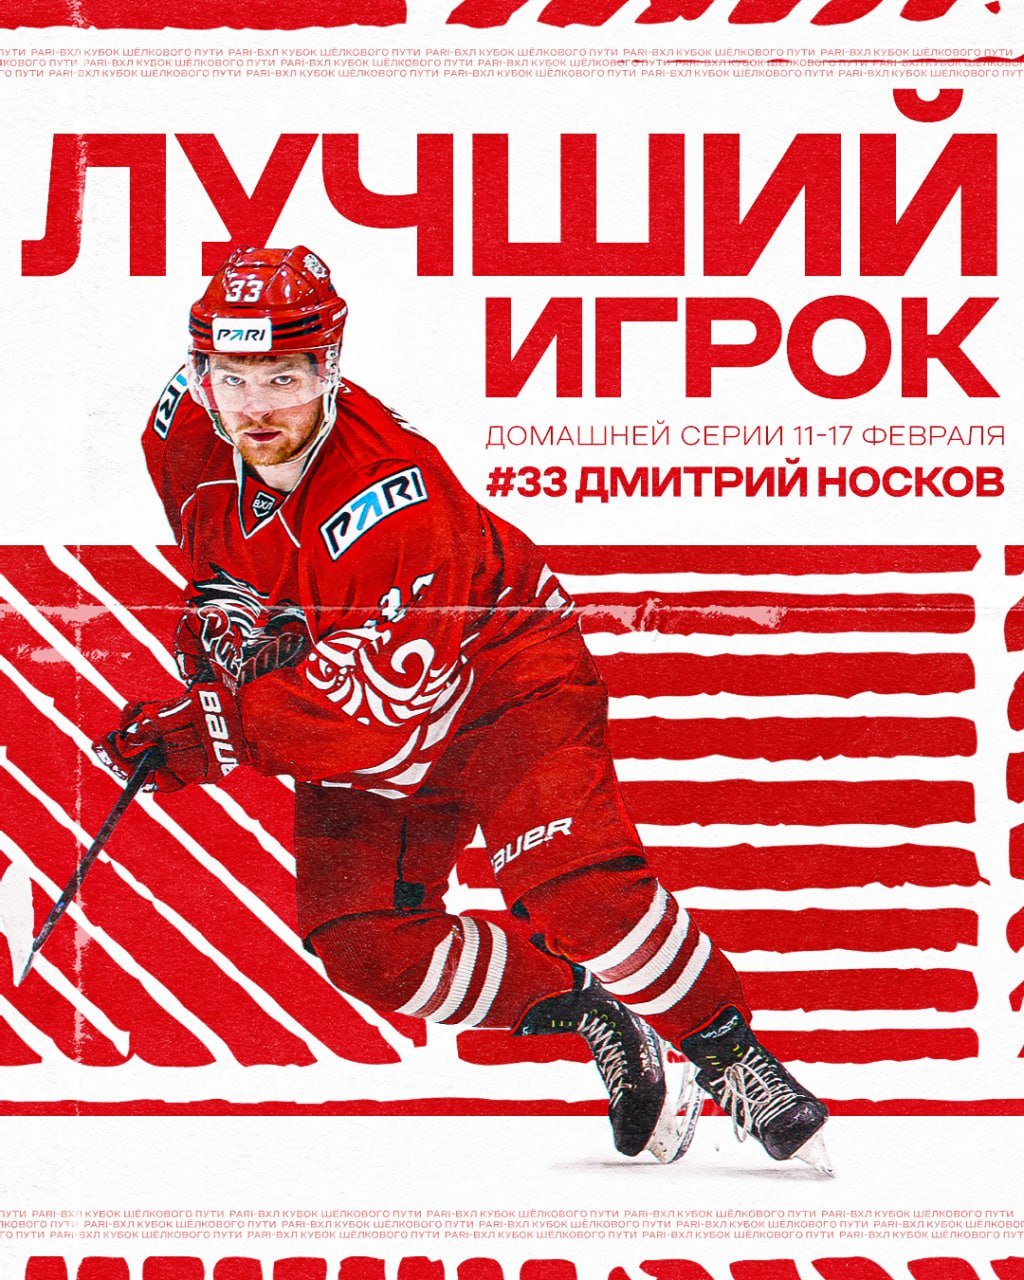 Дмитрий Носков - лучший игрок домашней серии